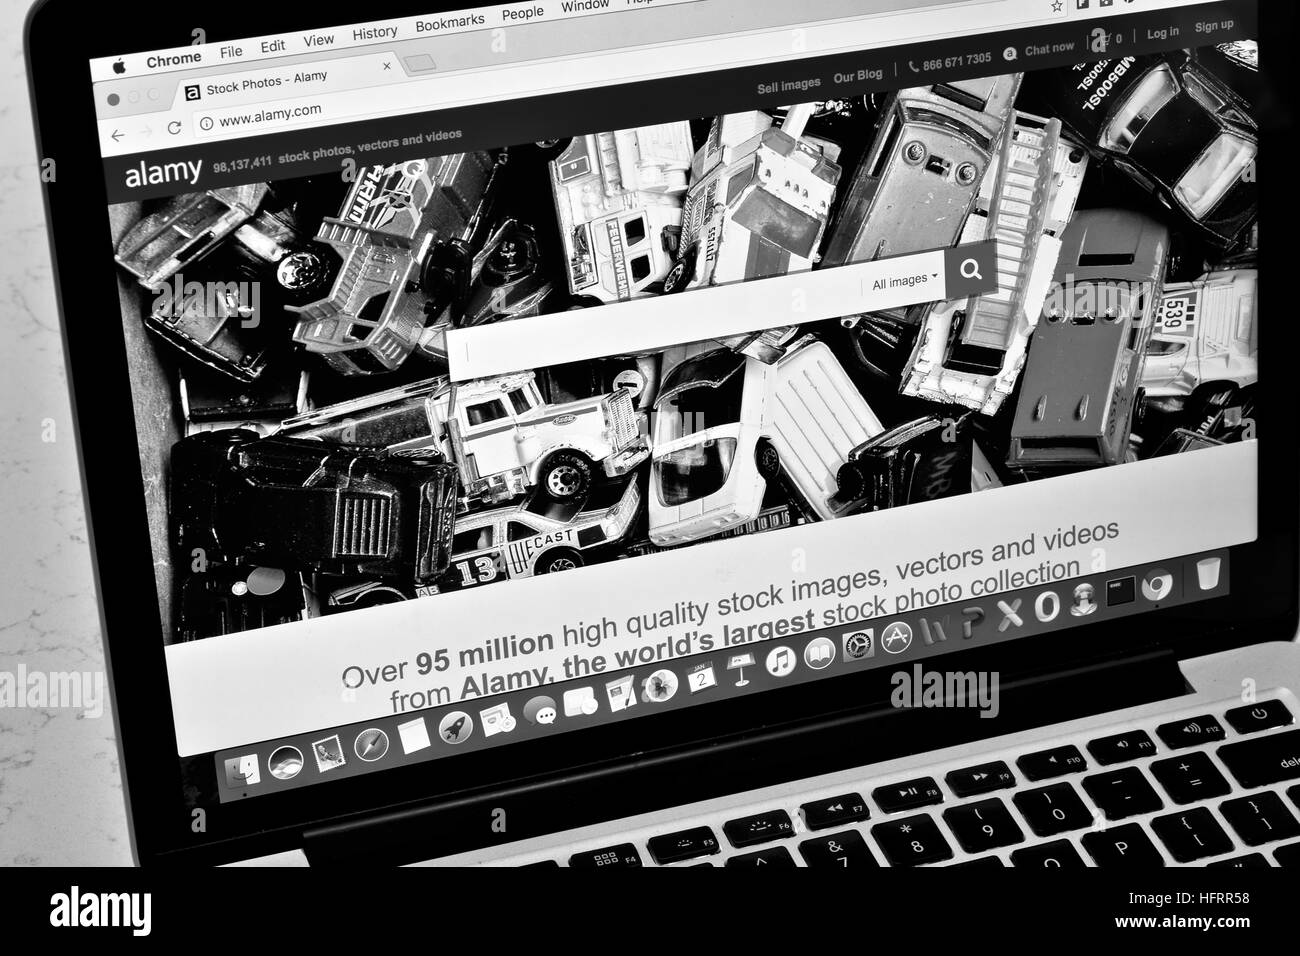 Ein Apple Macbook Pro Anzeige der Alamy stock Foto-Website in schwarz / weiß Stockfoto